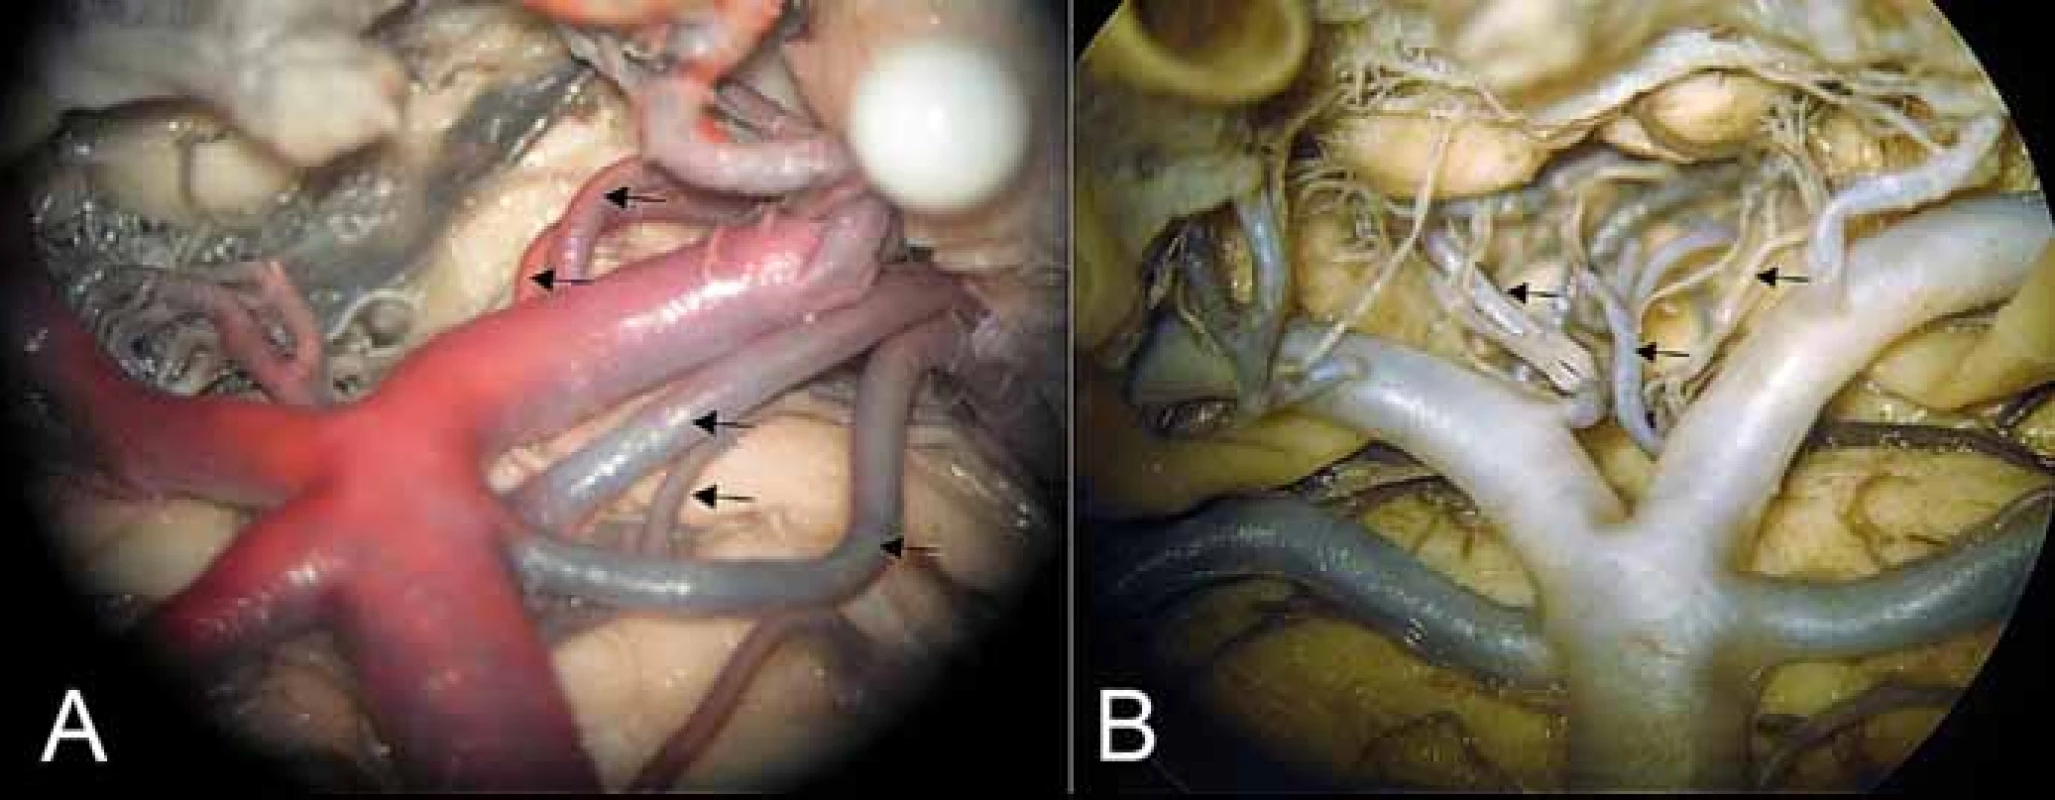 (A) Oblast bifurkace arteria basilaris, odstup arteria choroidea posterior medialis
a arteria collicularis z P1 (kraniální 2 šipky), zdvojení arteria cerebelli superior a mezi nimi
posterolaterální pontinní arterie. (B) Interpedunkulární perforátory (mediálně oboustranně)
a anterolaterální (pedunkulární) větévka (šipka vlevo).<br>
Fig. 4. (A) Area of basilar artery bifurcation with the medial posterior choroidal artery
and collicular artery branching from P1 (2 upper arrows), double superior cerebellar arteries
with the posterolateral pontine artery between them. (B) Interpeduncular perforators
(medially bilaterally) and anterolateral – (peduncular) branch (left arrow).